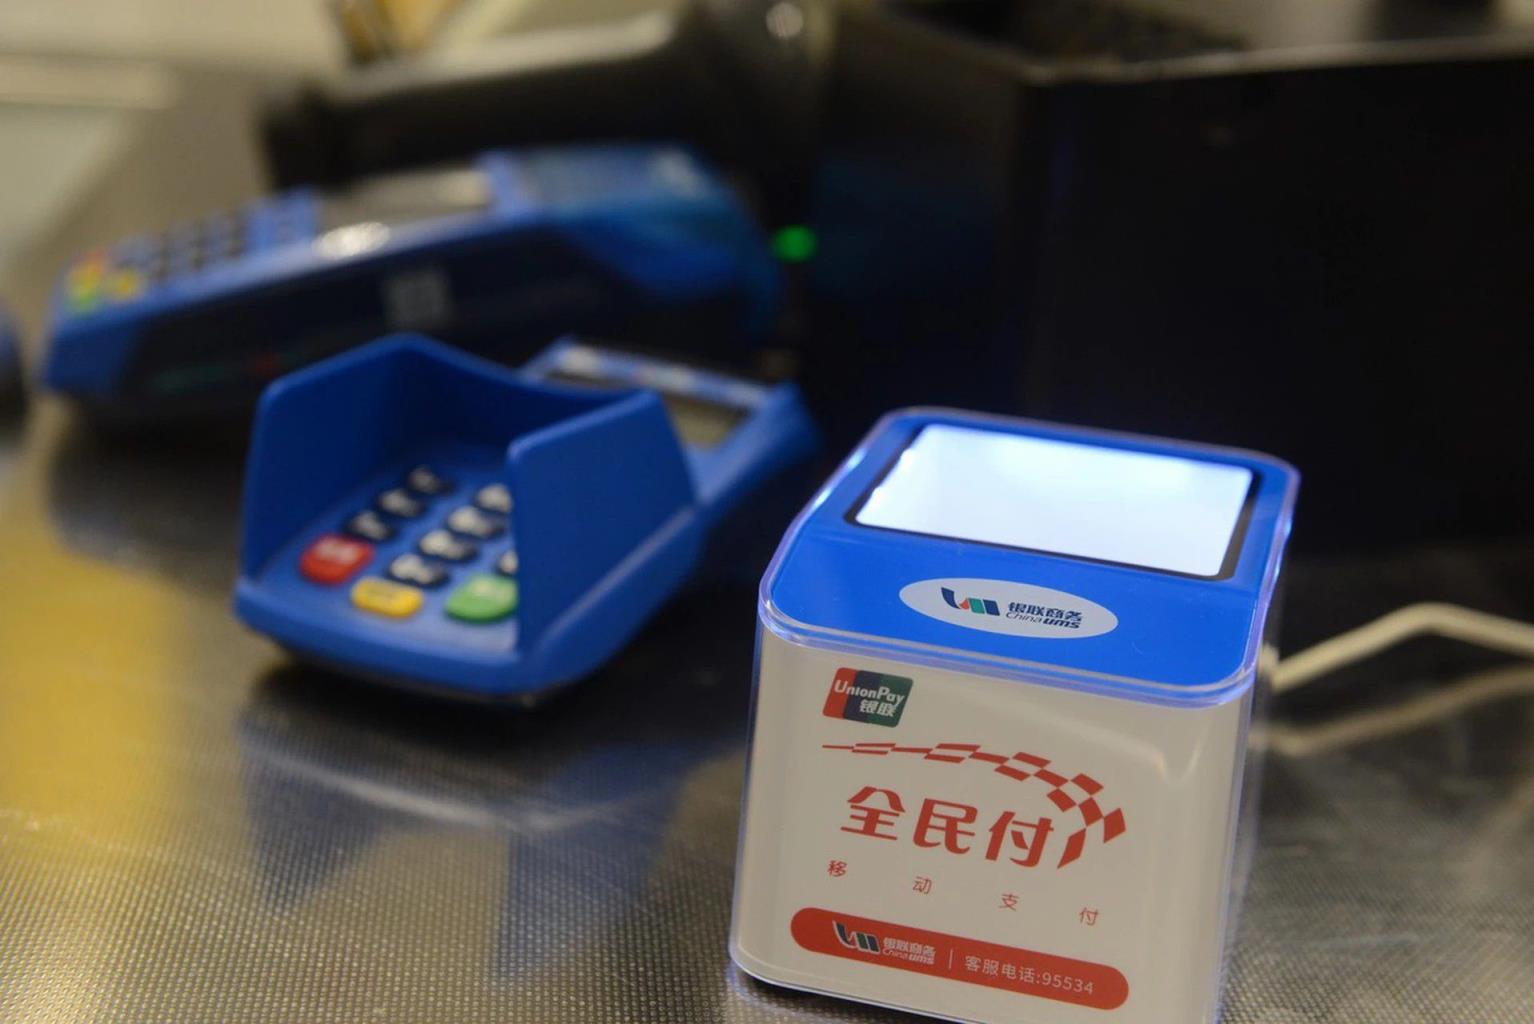 宝贝支付NFC刷卡功能上线了2022年1月1日应知道-第1张图片